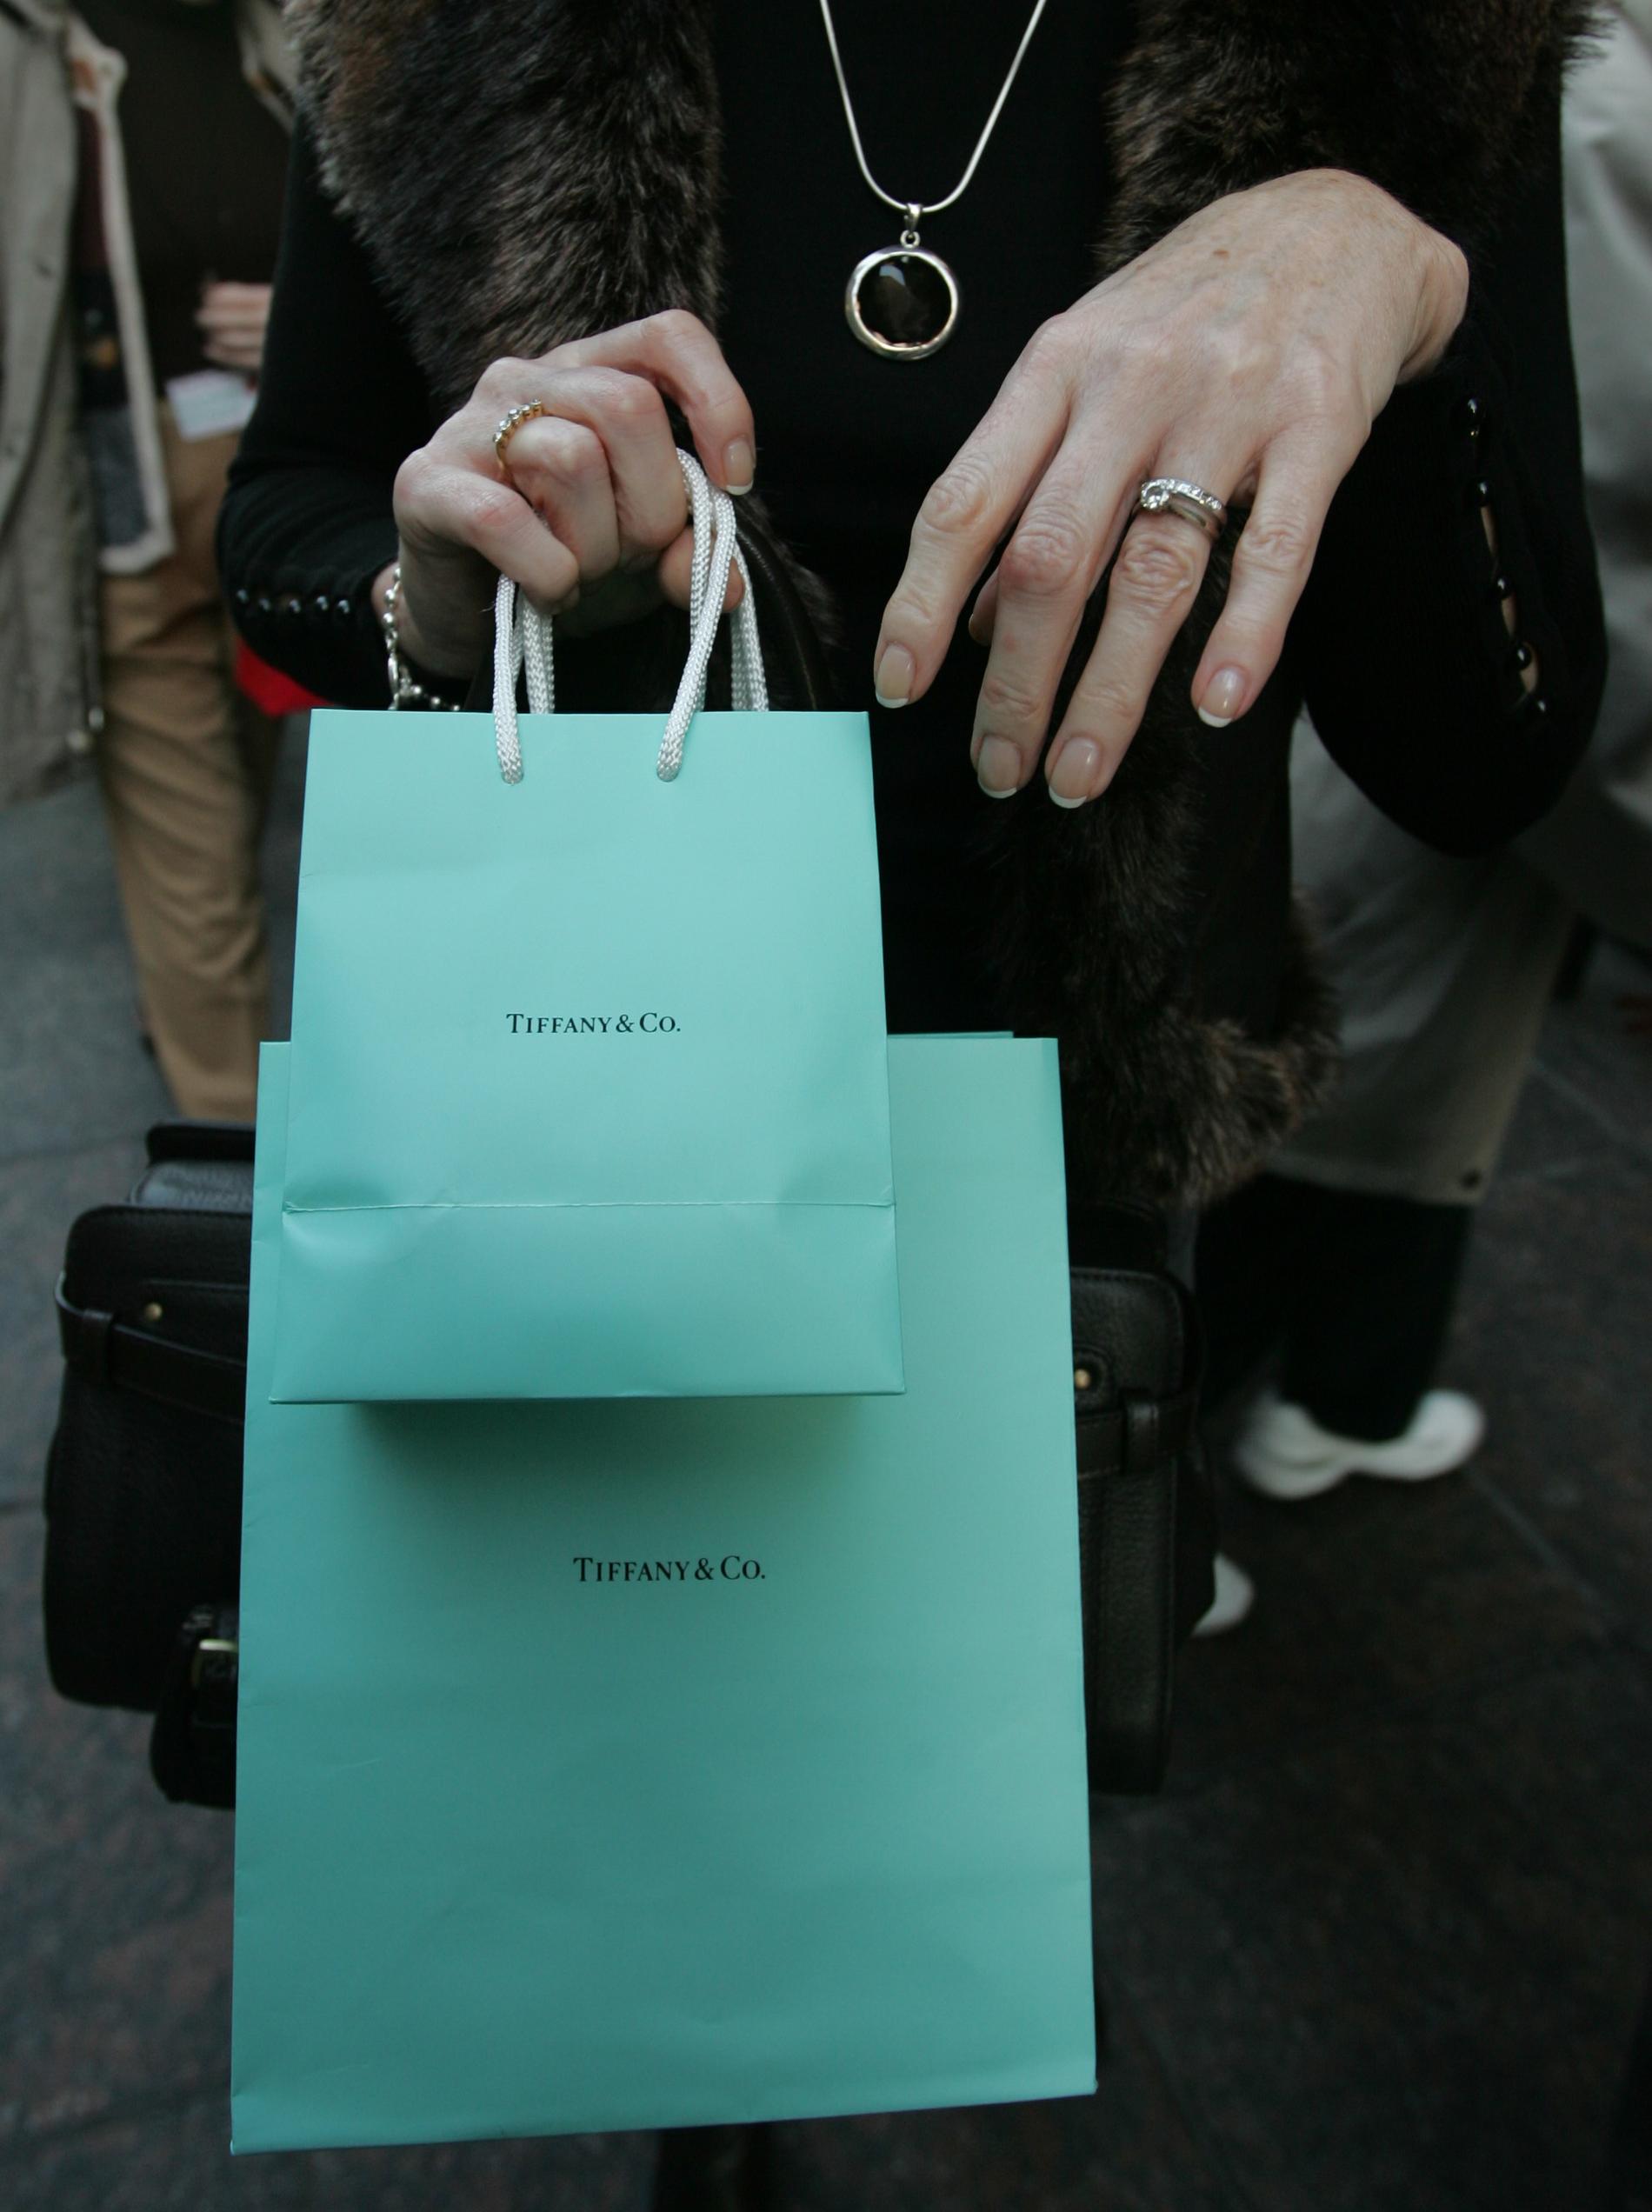 Den turkosblå färgen är Tiffanys signaturfärg och valdes av företagets grundare Charles Lewis Tiffany. Färgen är varumärkesskyddad. Nu pryder den allt från påsar till presentaskar och inredning och är känd som Tiffanyblå. Arkivbild.